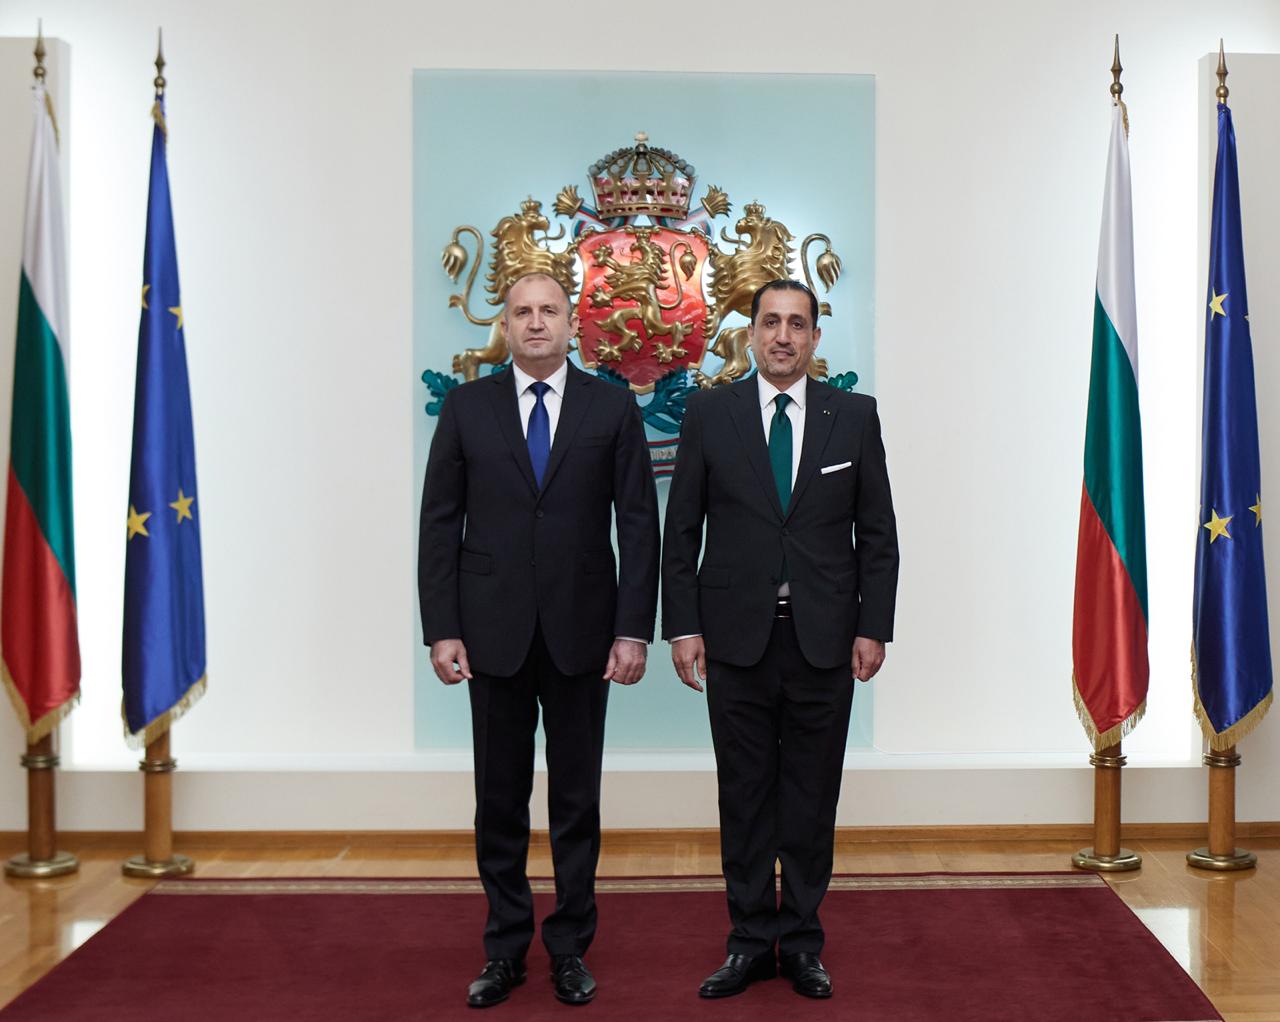 القضاة يقدم أوراق اعتمادة إلى رئيس بلغاريا كسفير غير مقيم للمملكة